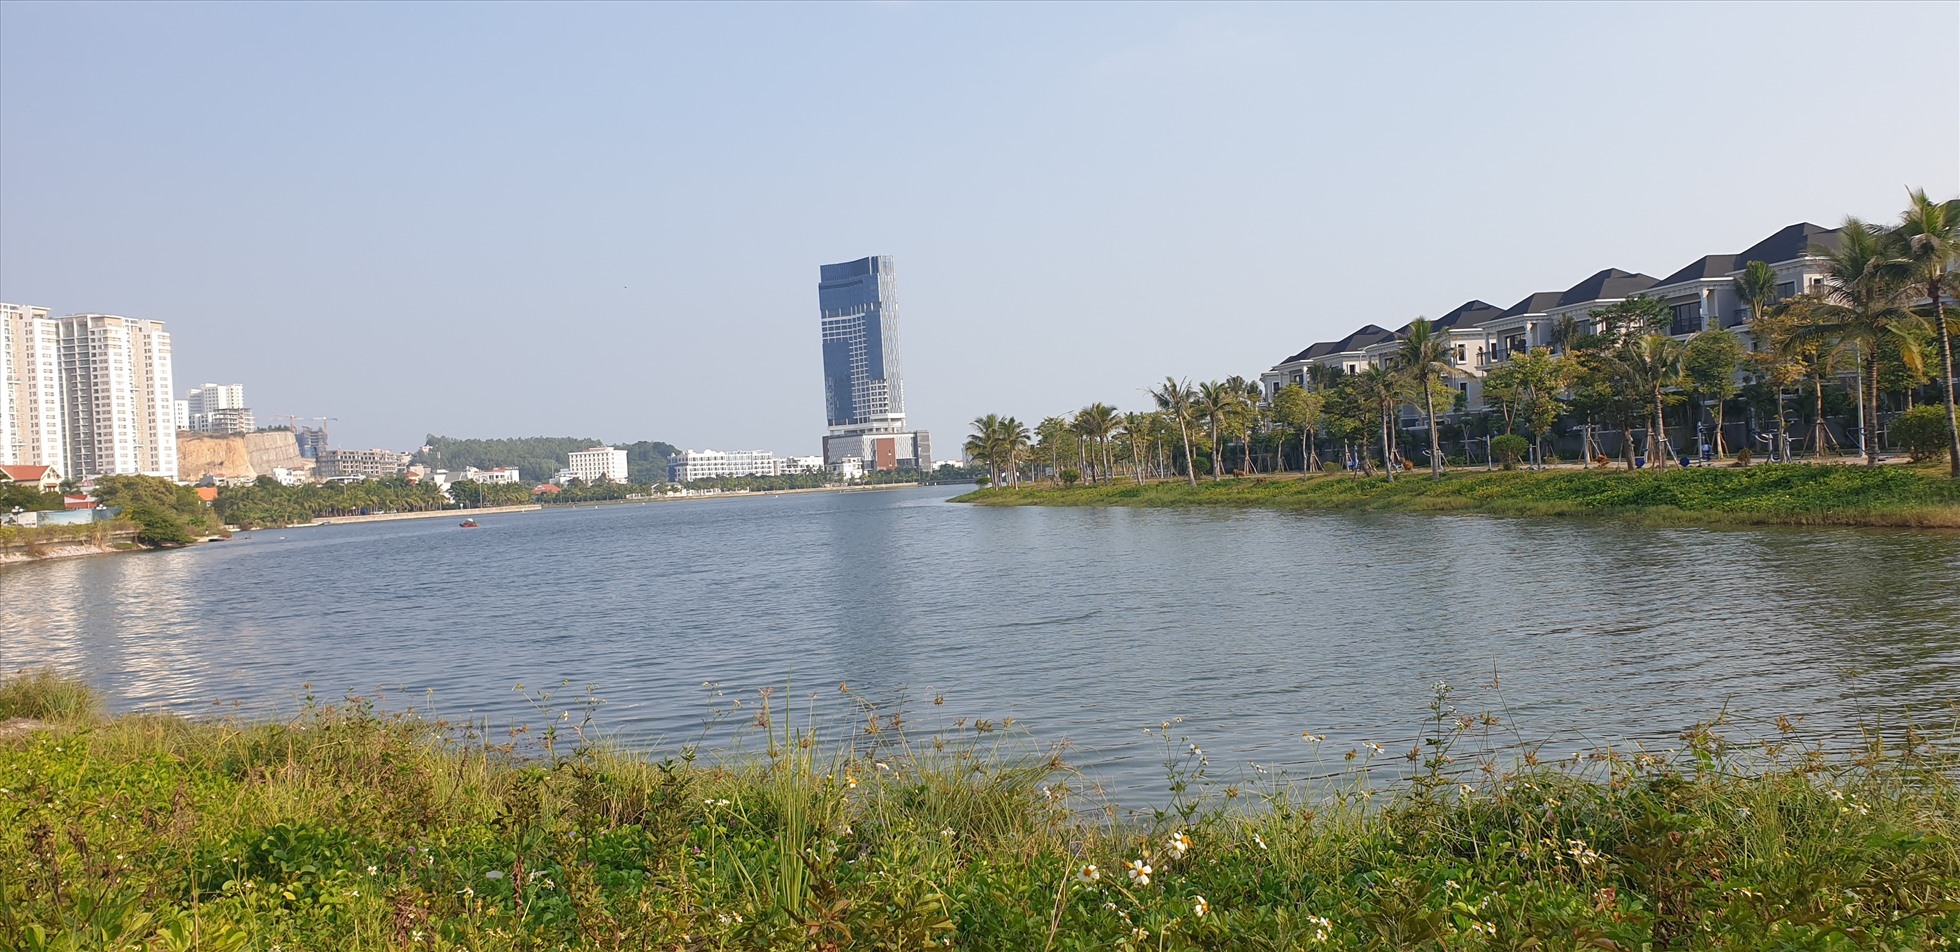 Hồ Cái Dăm, thuộc phường Bãi Cháy và Hùng Thắng, được hình thành sau quá trình lần biến làm khu đô thị. Ảnh: Nguyễn Hùng